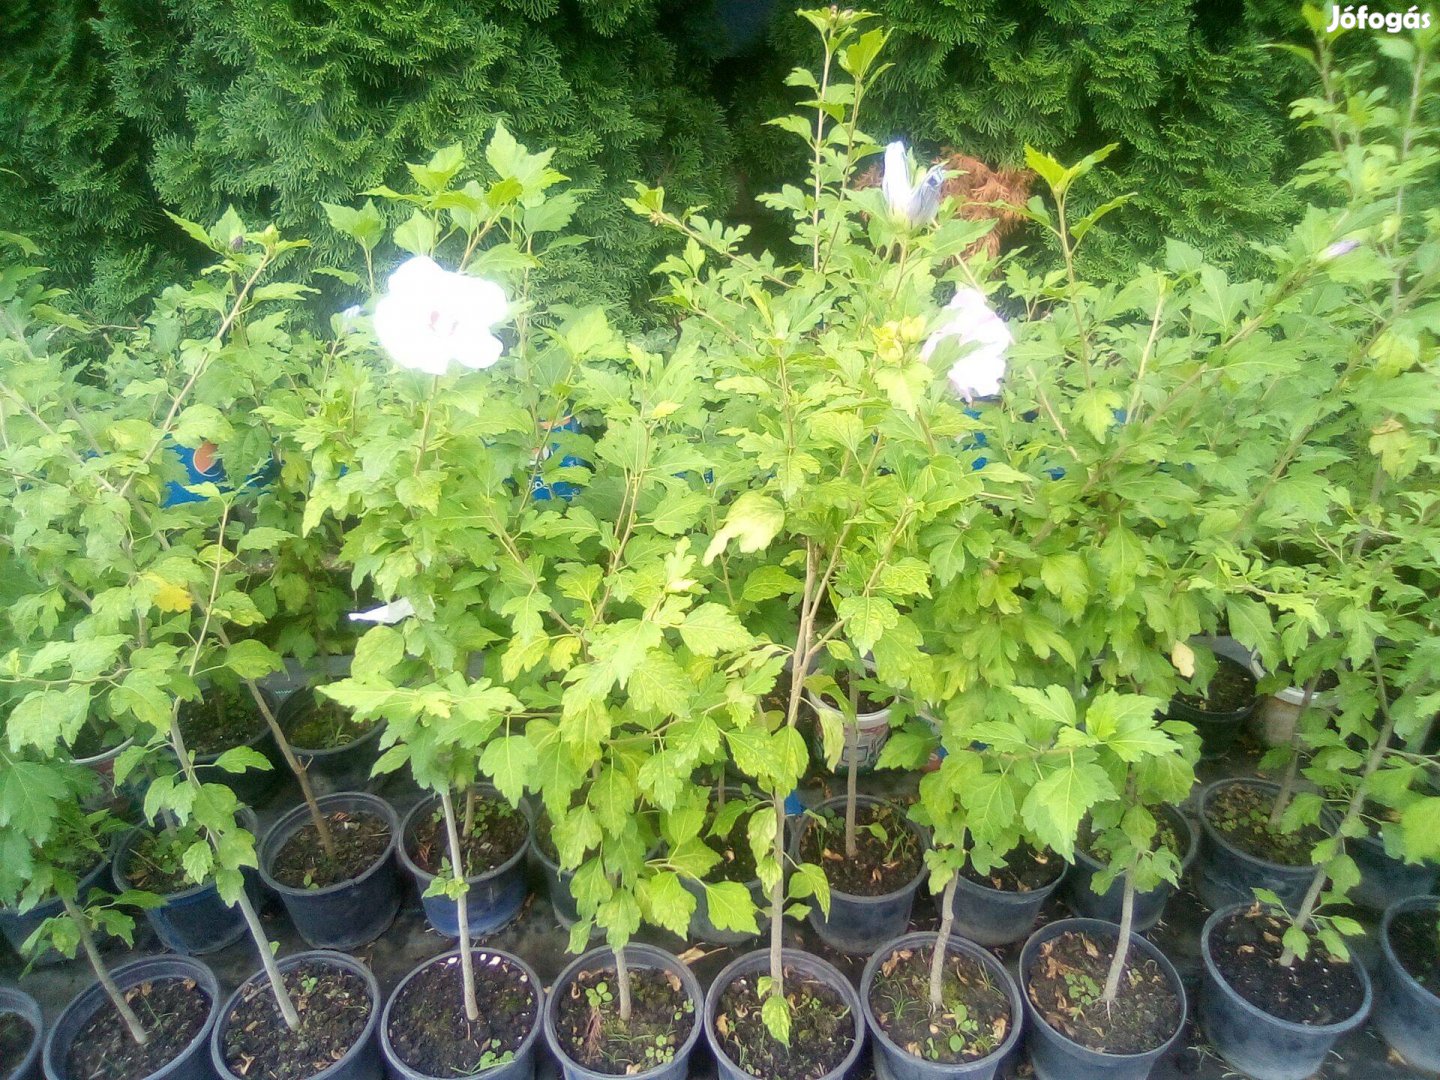 Syr hibiszkusz (mályvacserje) növények fehér és lila színben eladók